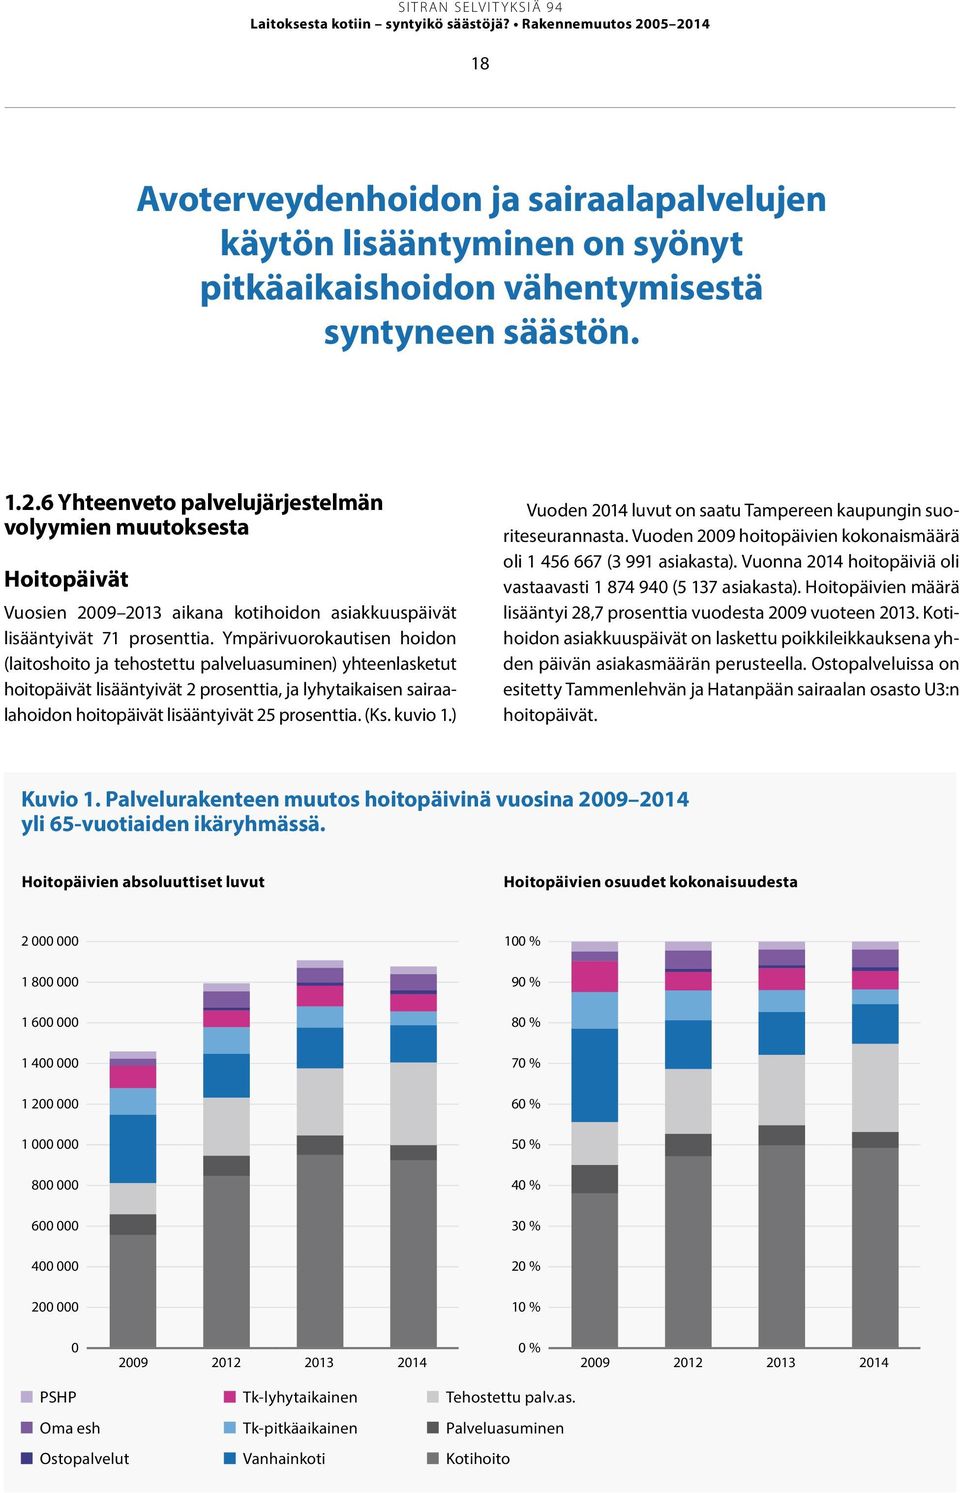 (Ks. kuvio 1.) Vuoden 2014 luvut on saatu Tampereen kaupungin suoriteseurannasta. Vuoden 2009 hoitopäivien kokonaismäärä oli 1 456 667 (3 991 asiakasta).